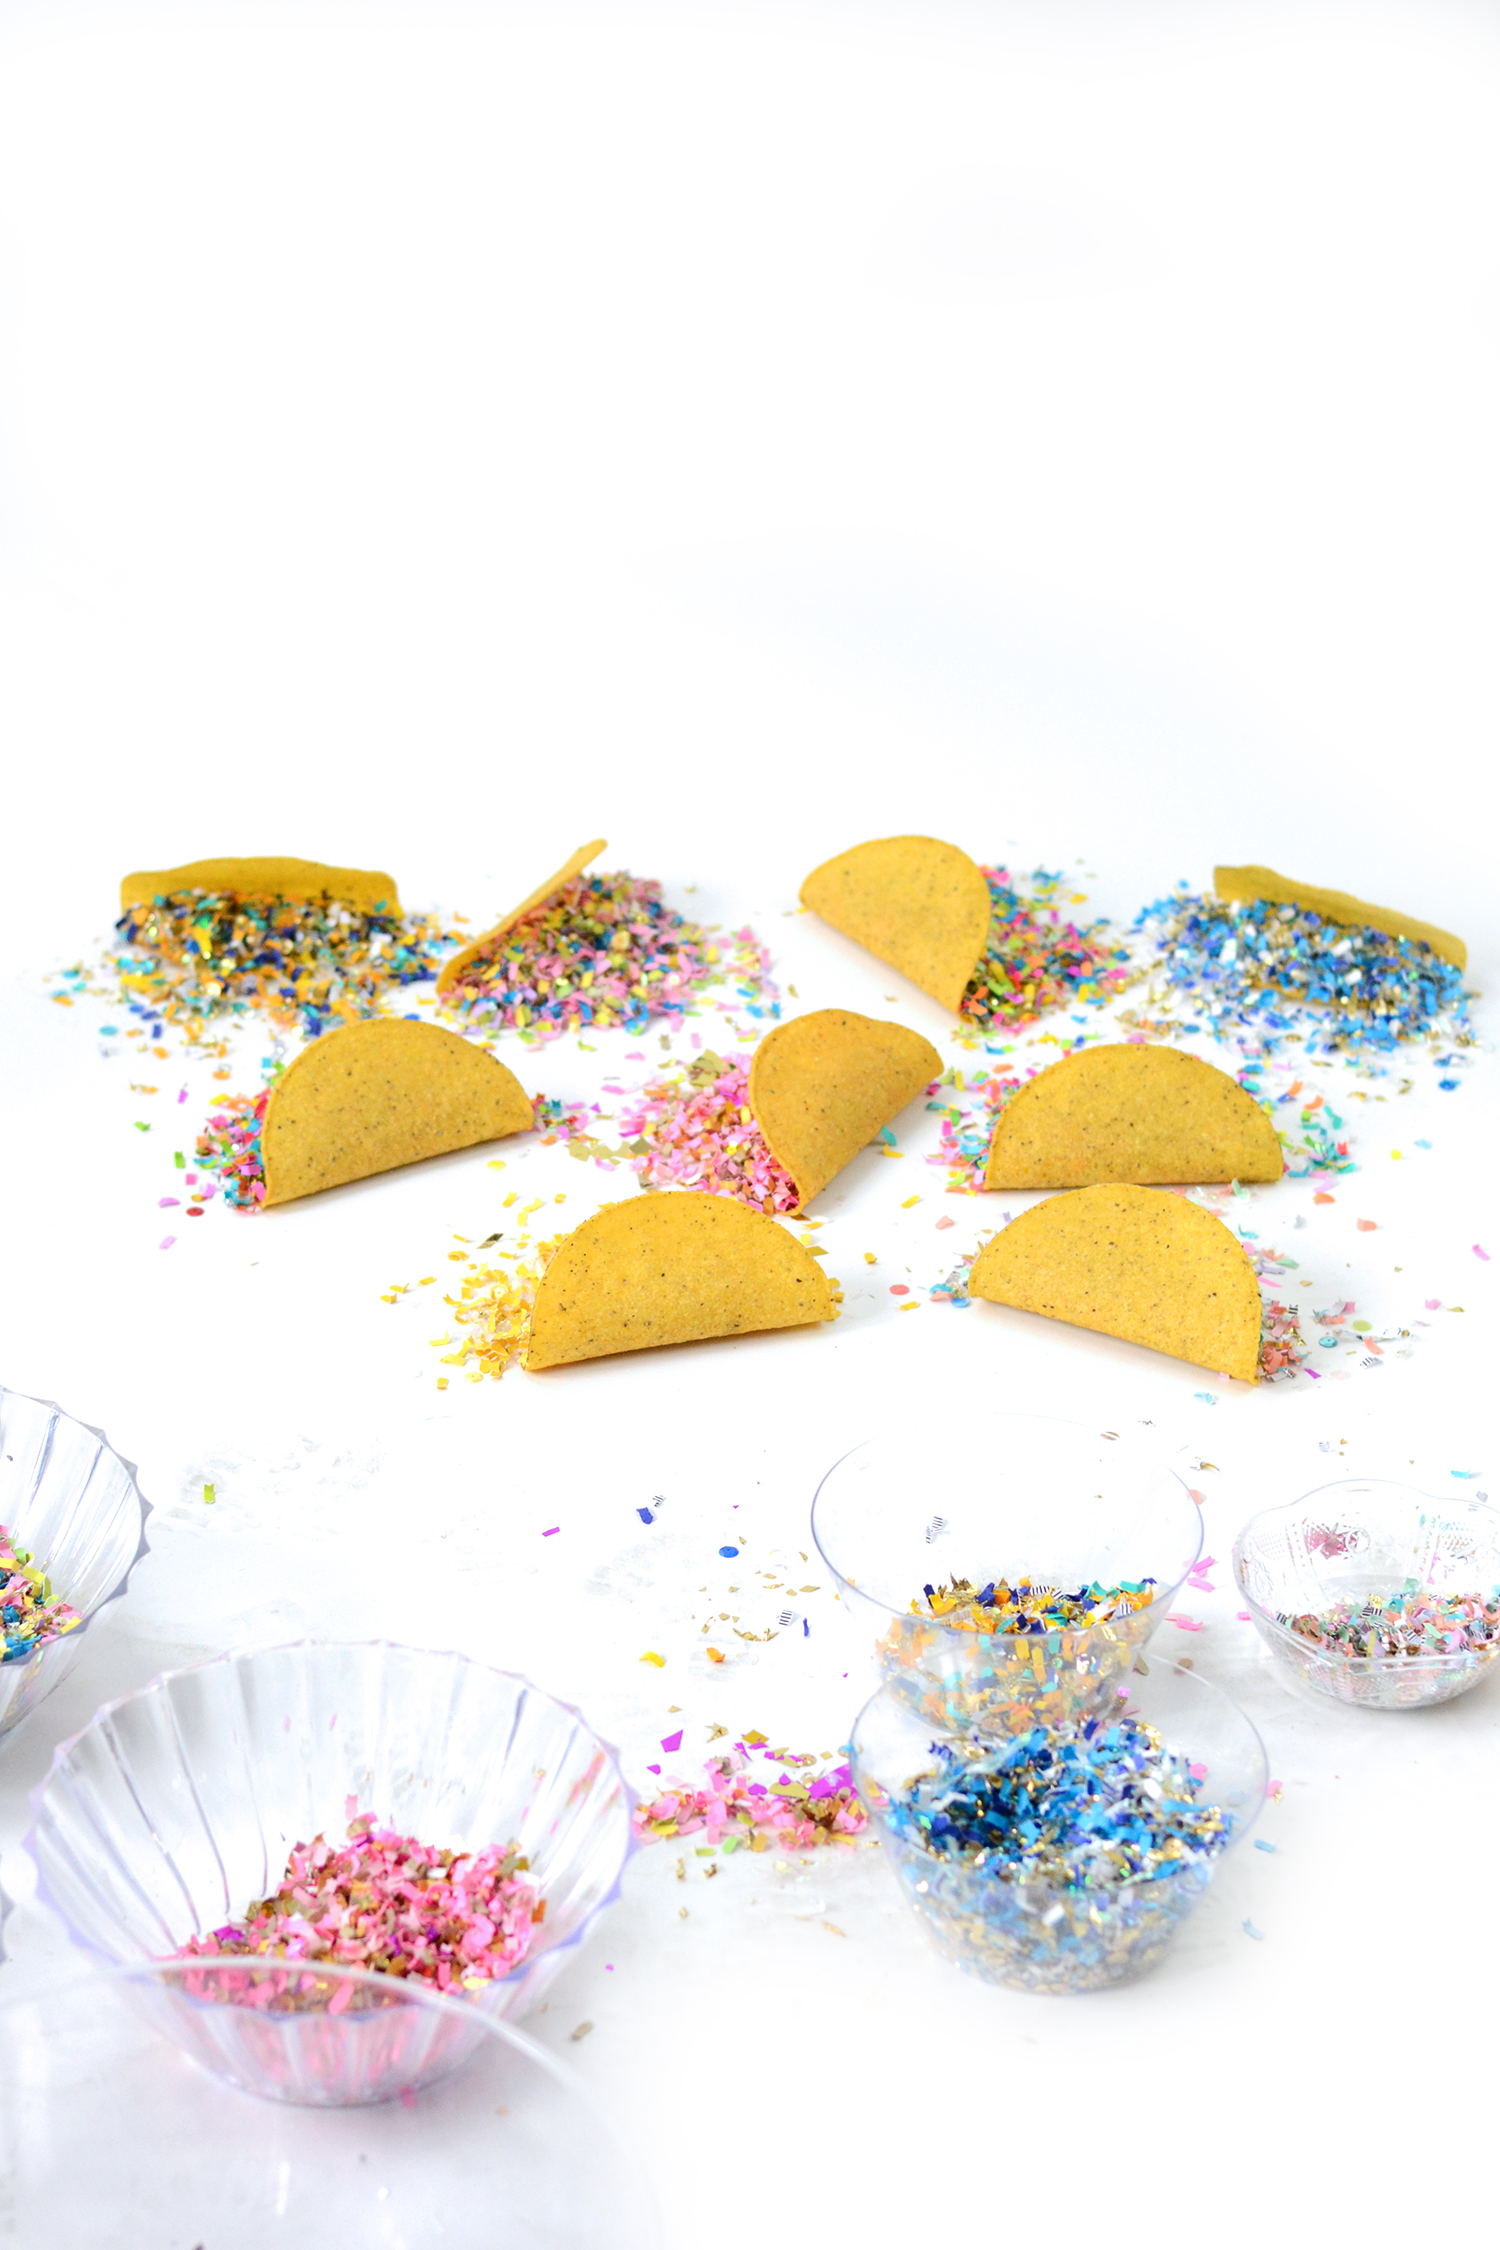 Colorful Confetti Tacos | Jessica Serra Huizenga